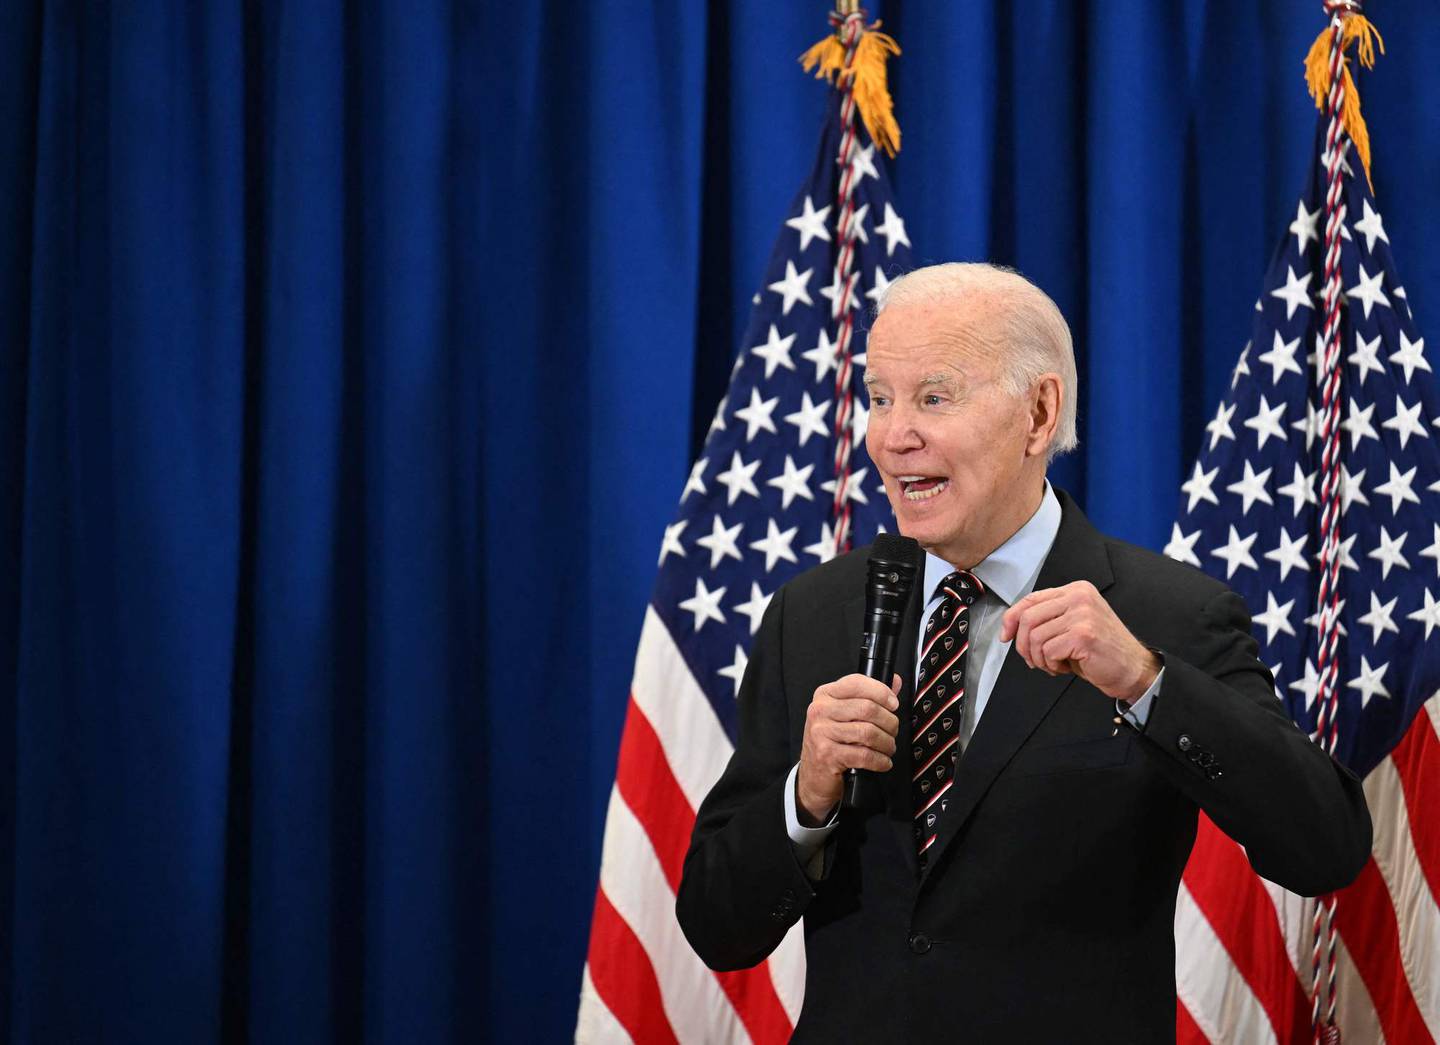 President Joe Biden har sagt at han har intensjoner om å stille igjen, og skal bestemme seg i begynnelsen av 2023.